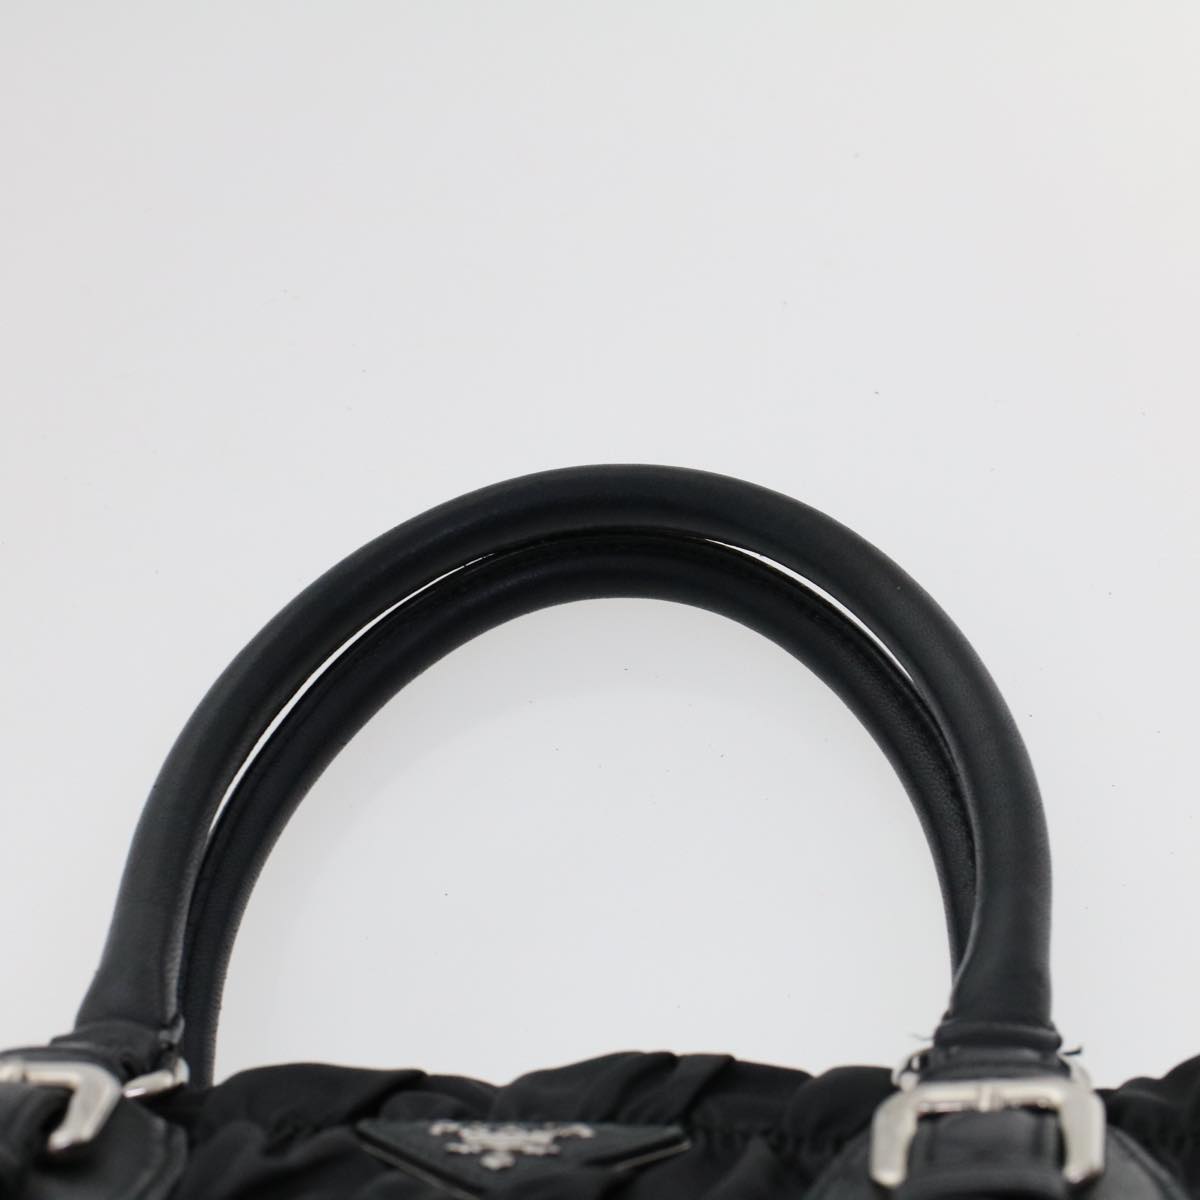 Prada Black Gaufre Nylon Handbag